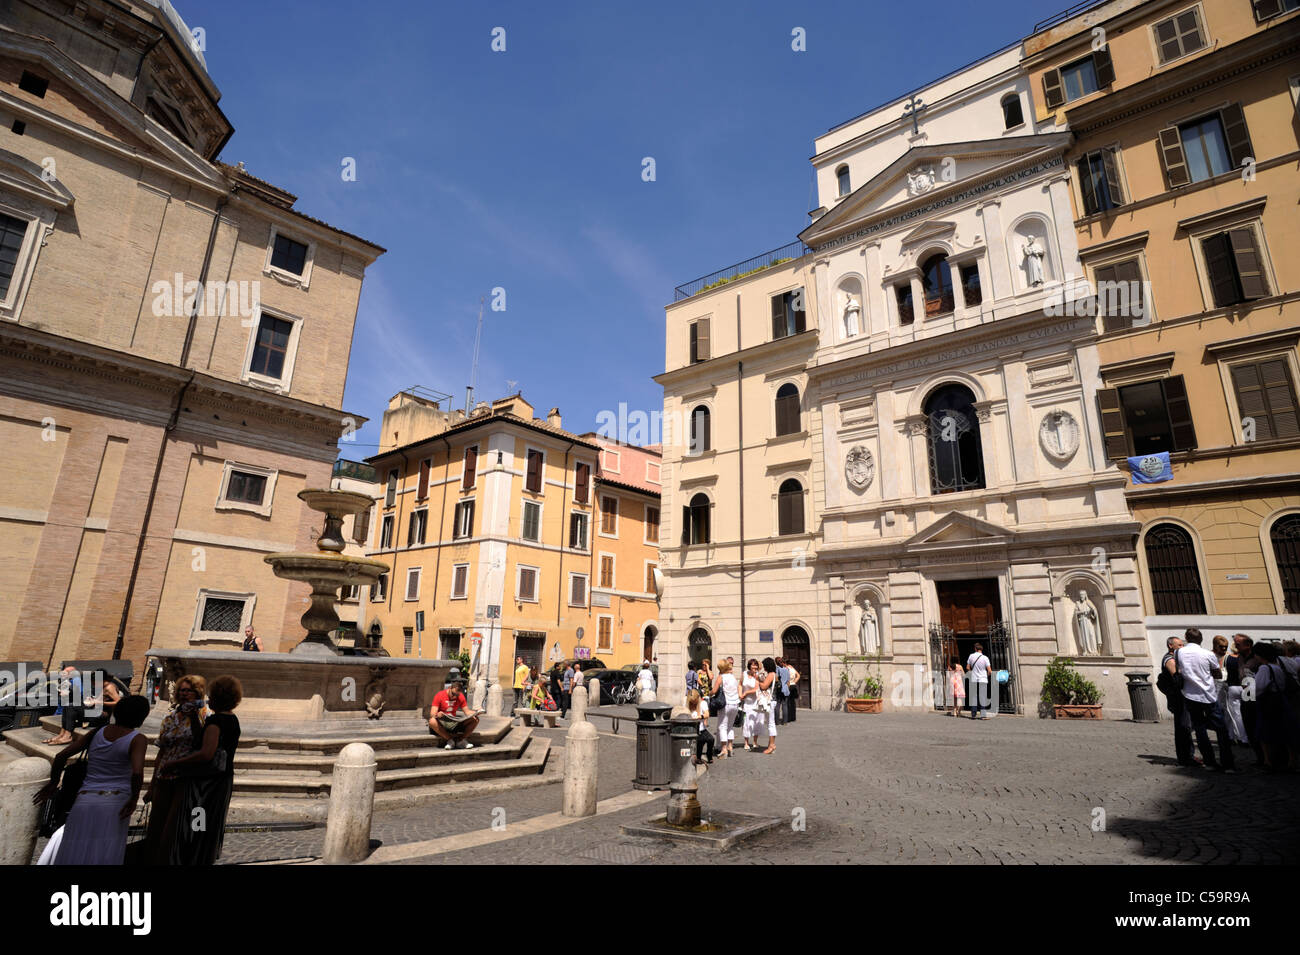 italy, rome, piazza della madonna dei monti Stock Photo